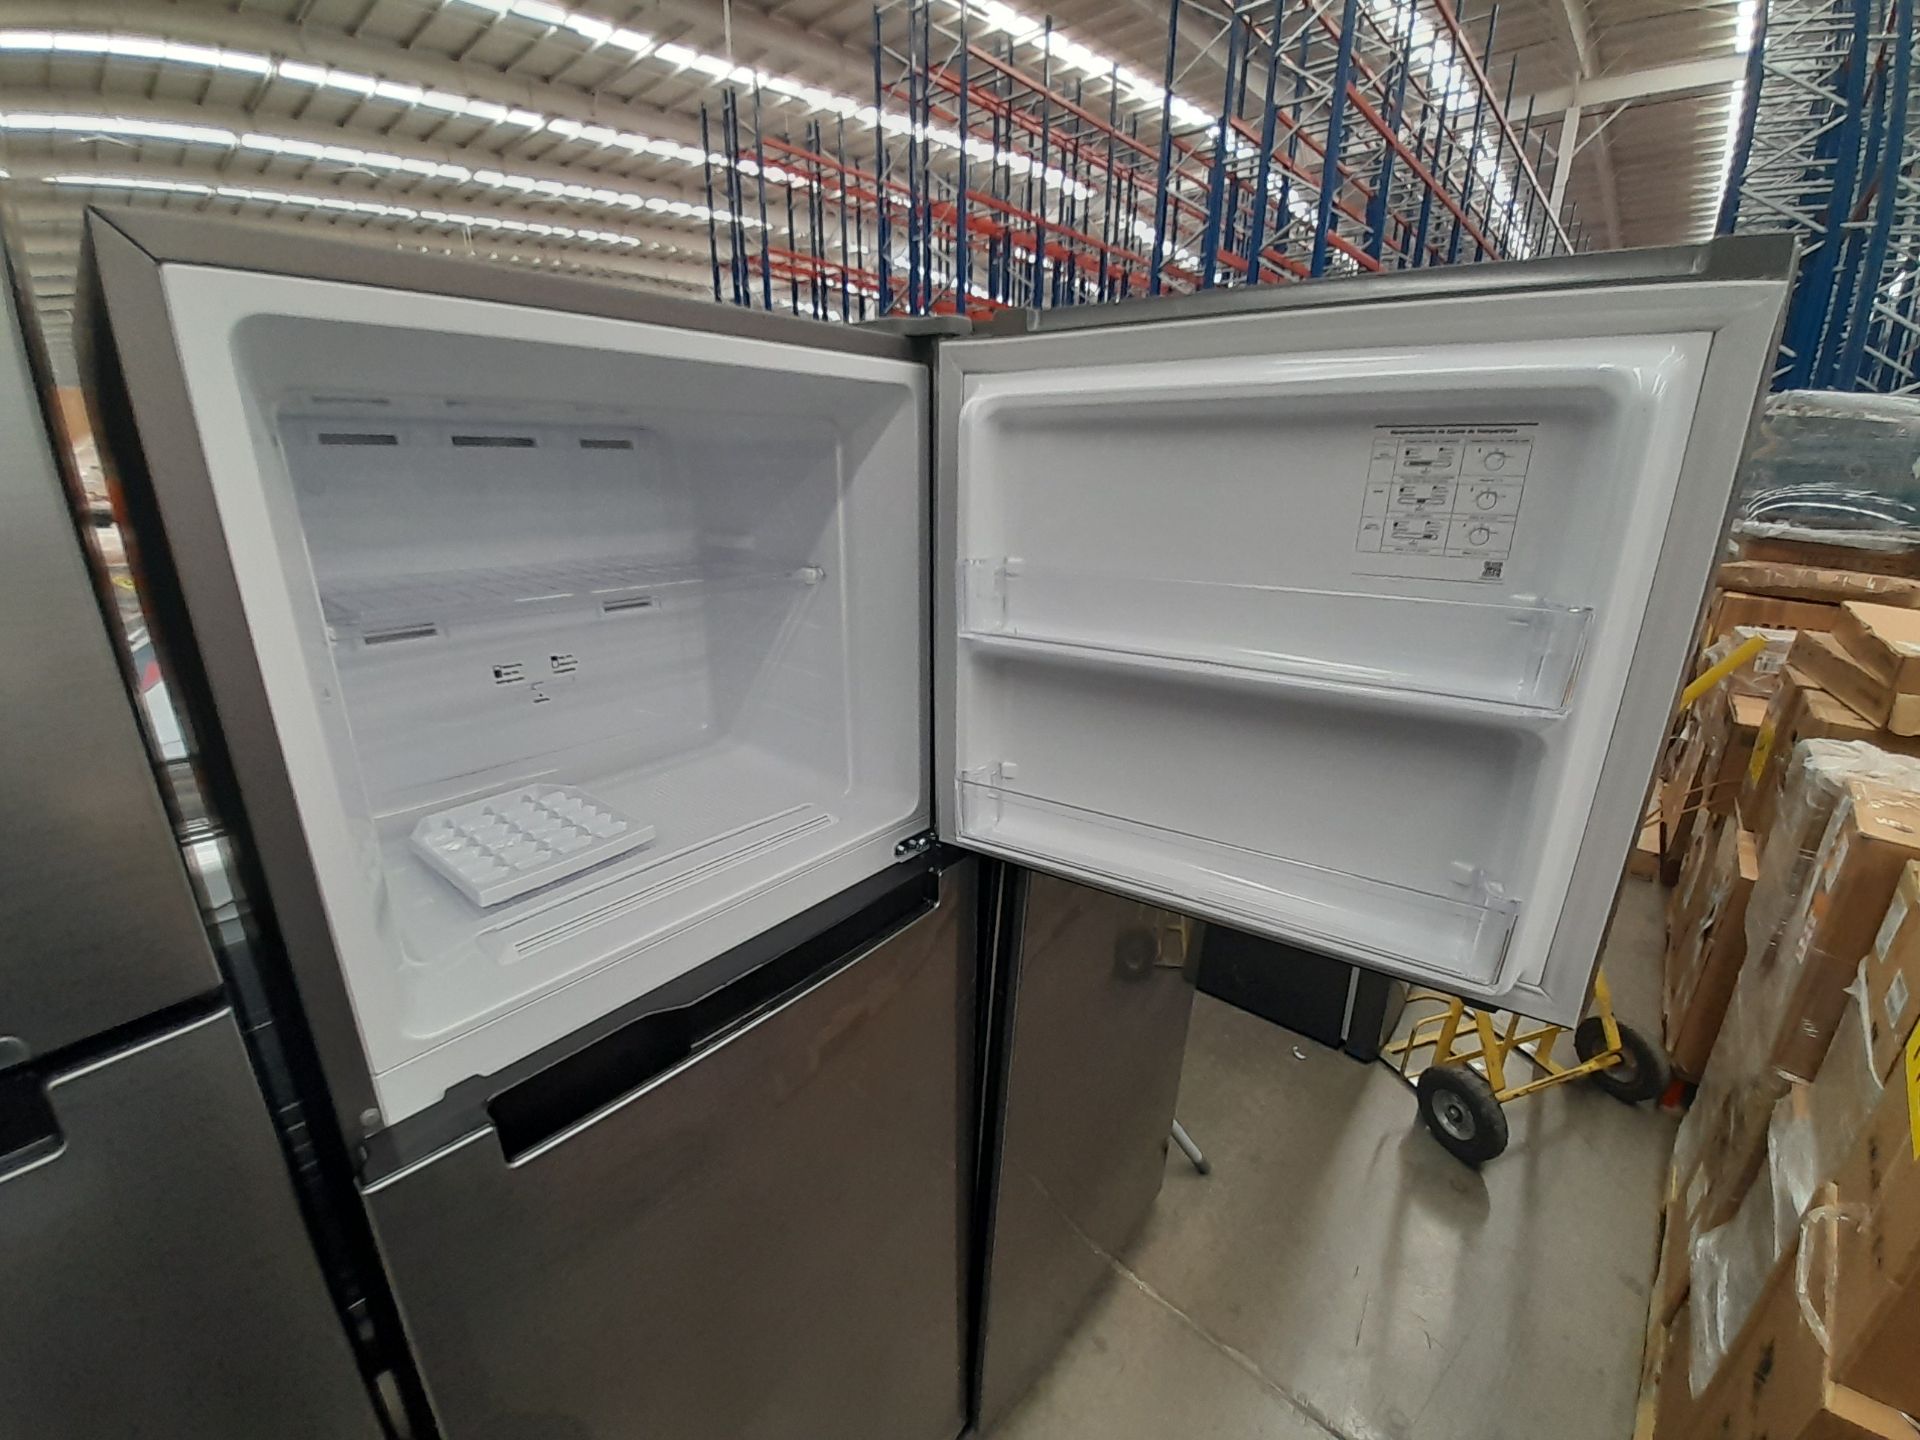 Lote de 2 refrigeradores contiene: 1 refrigerador Marca SAMSUNG, Modelo RT29A500JS8, Serie 03920W, - Image 4 of 8